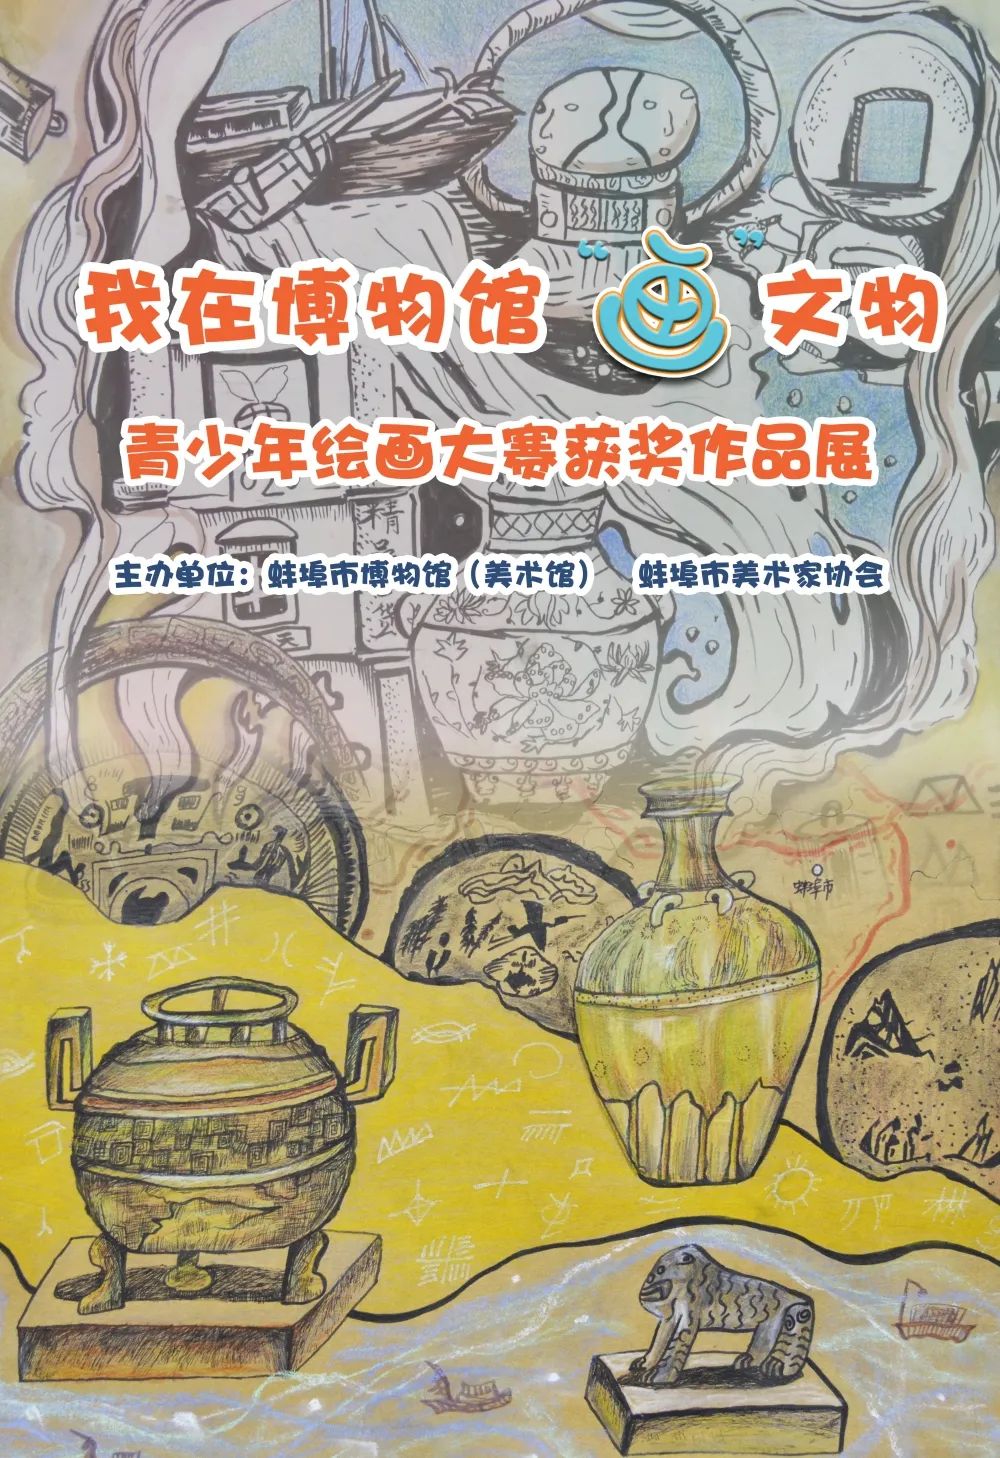 儿童绘画艺术交流,展现中华民族独特的文化魅力,蚌埠市博物馆与蚌埠市